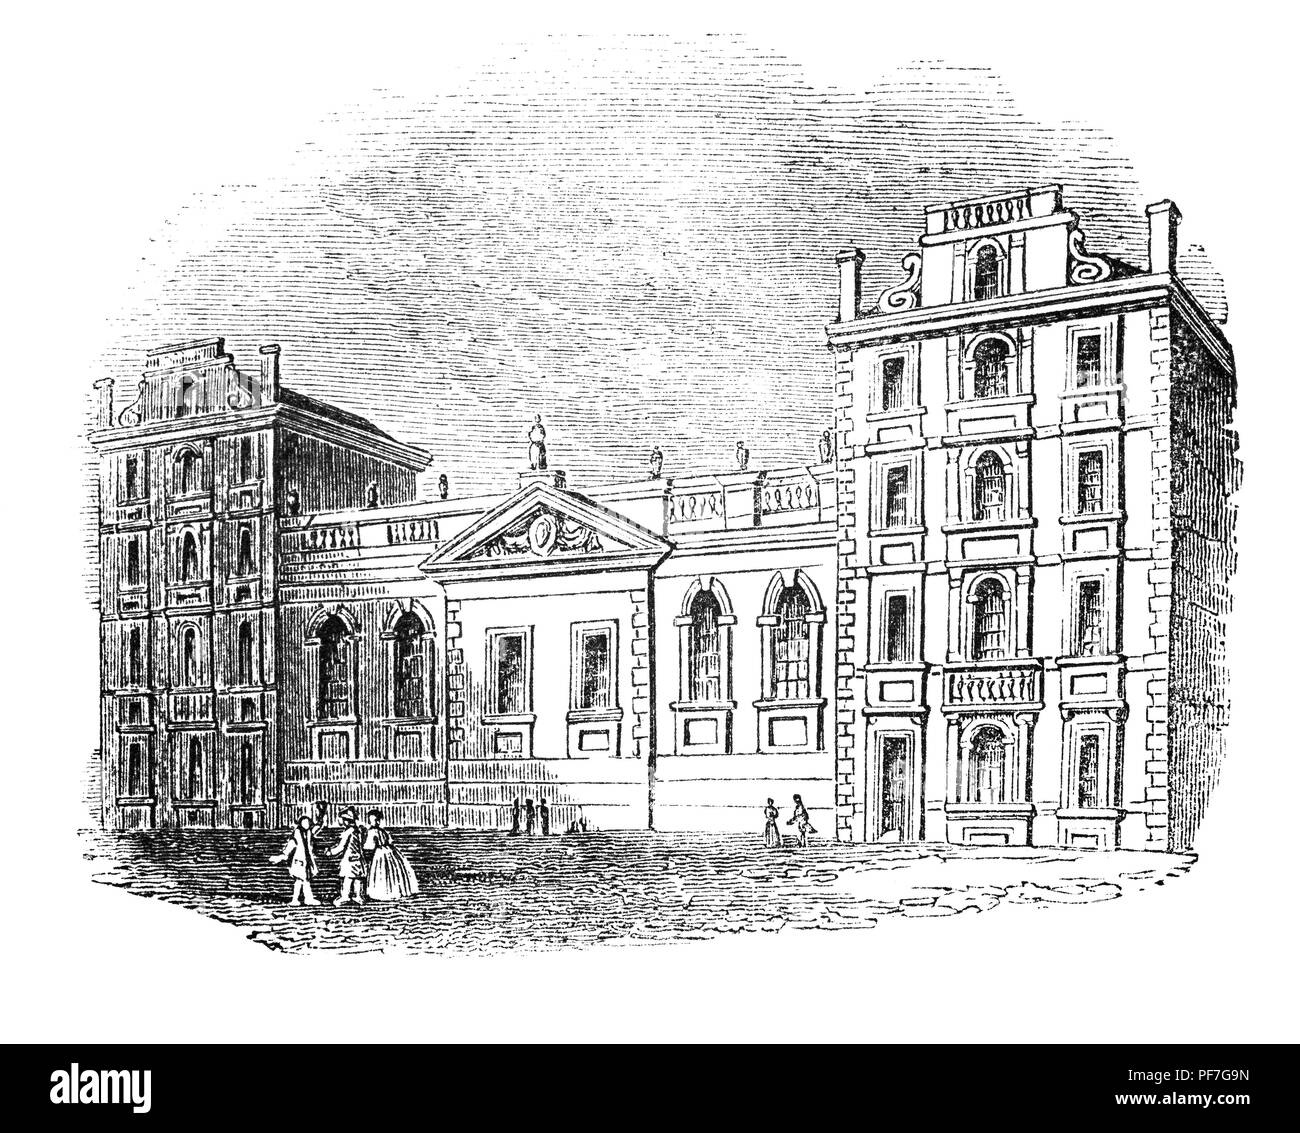 St Paul's à l'origine de l'école tire son nom de la Cathédrale St Paul à Londres. Une école cathédrale existait depuis environ 1103, mais par le 16ème siècle cependant, il avait diminué, et en 1509, une nouvelle école a été fondée par John Colet, Doyen de la Cathédrale St Paul, sur une parcelle de terrain au nord de la cathédrale. L'école d'origine, a été détruit avec la cathédrale dans le Grand Incendie de Londres en 1666 et reconstruite en 1670. A l'origine, l'école a fourni l'éducation pour 153 enfants que le nombre 153 a longtemps été associée à l'image miraculeuse de poissons projet enregistré dans l'Evangile de saint Jean. Banque D'Images